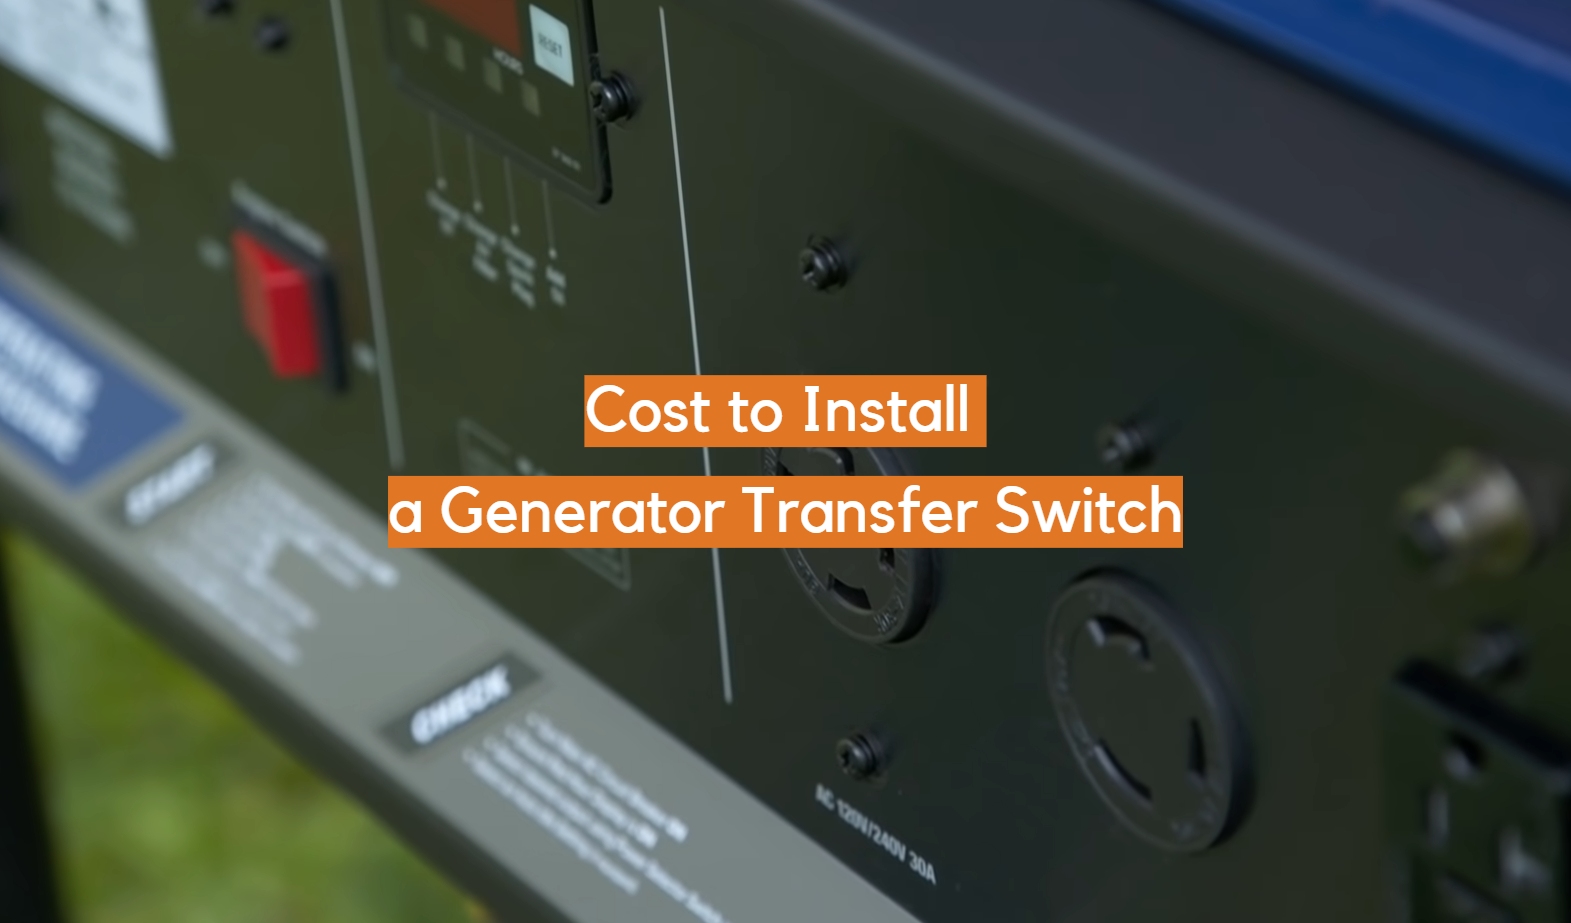 Costo de instalar un interruptor de transferencia de generador